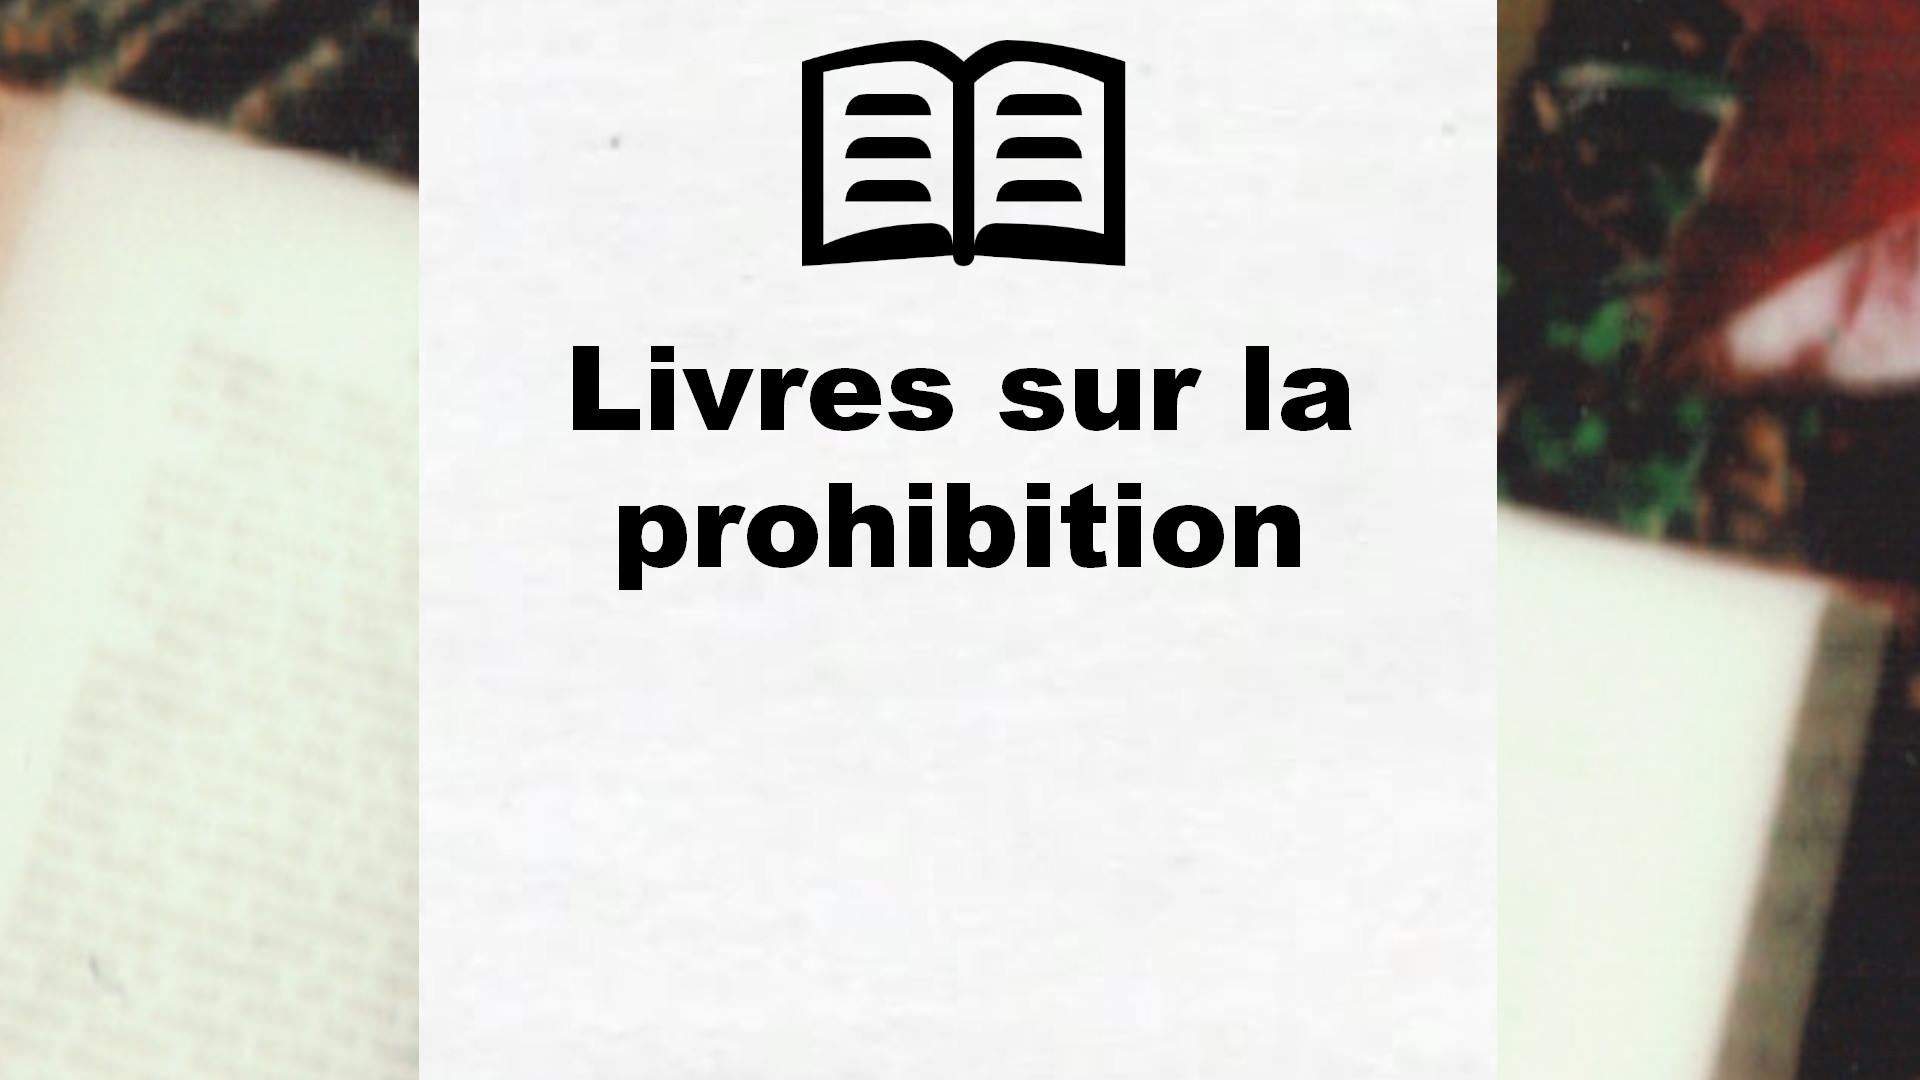 Livres sur la prohibition